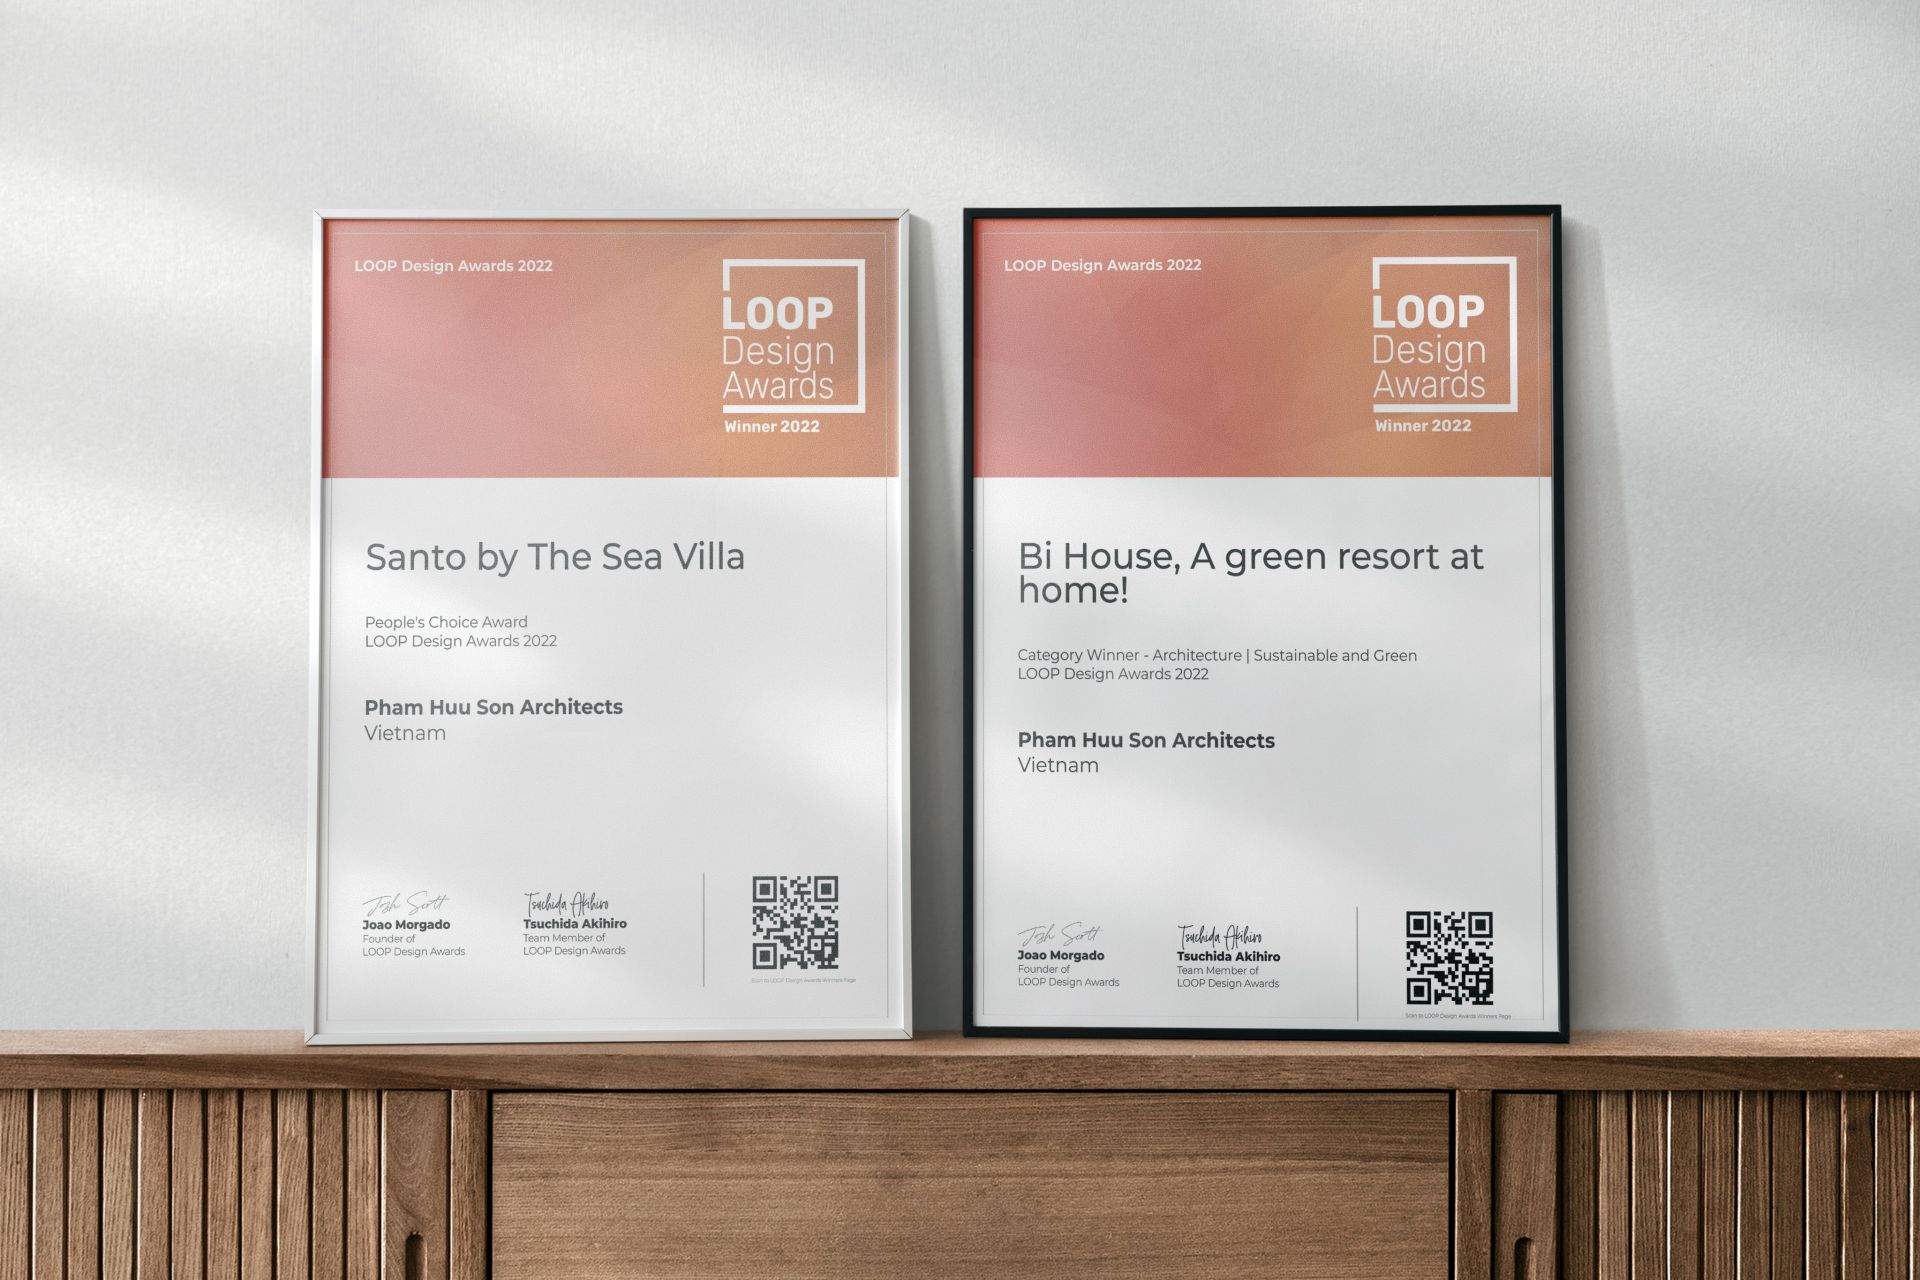 Loop Design Awards 2022 chứng nhận vinh danh với hai tác phẩm thiết kế mang hai phong cách riêng biệt tại Nha trang - Khánh Hòa